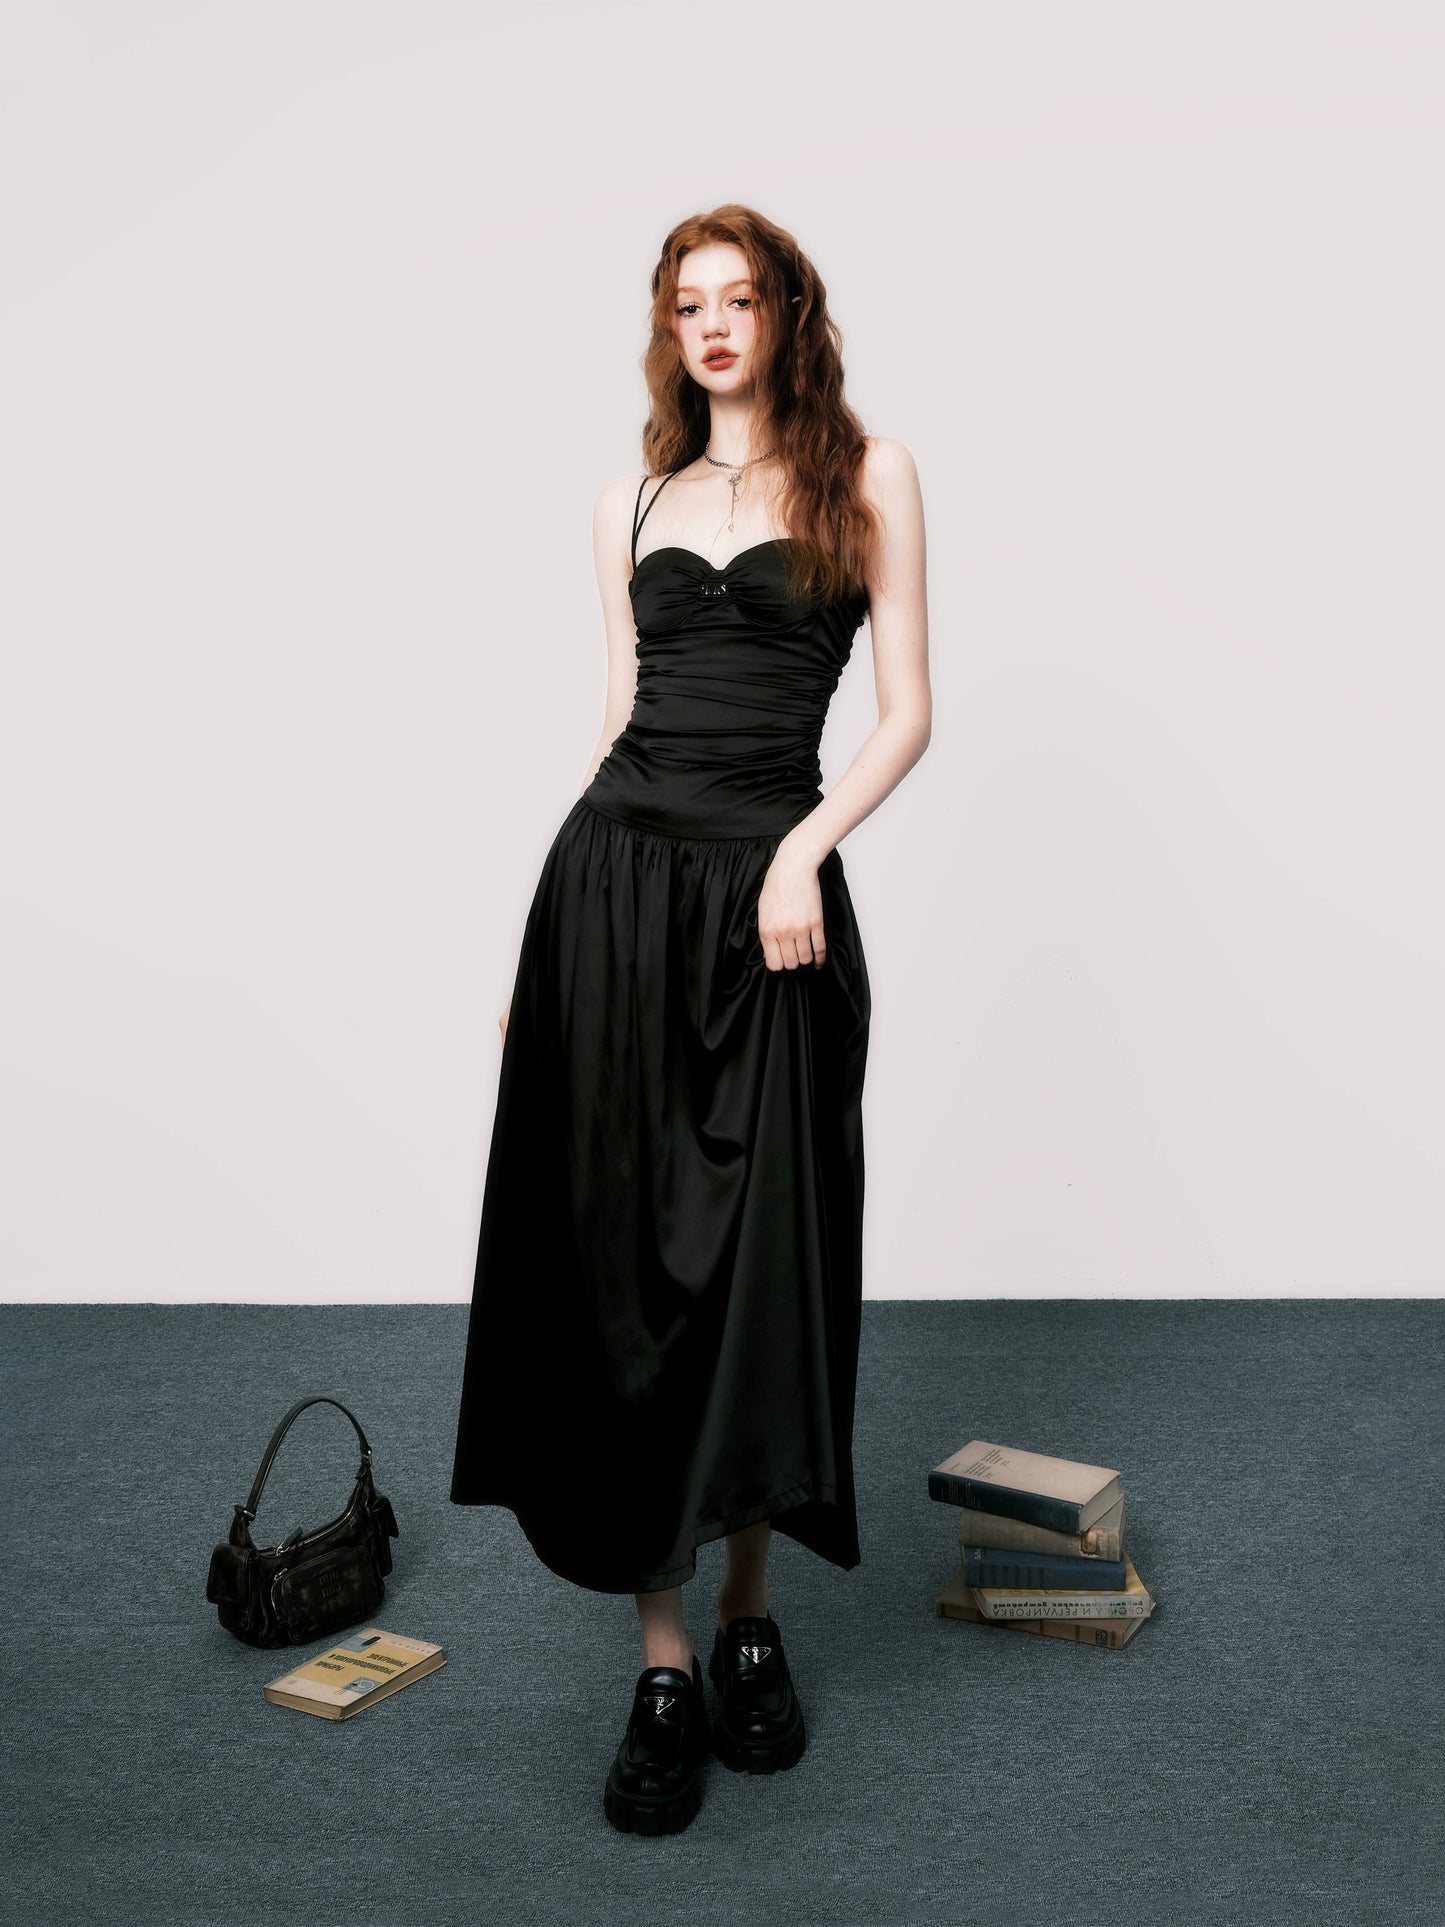 French Backless Luxury Dress - Dark Wrinkle